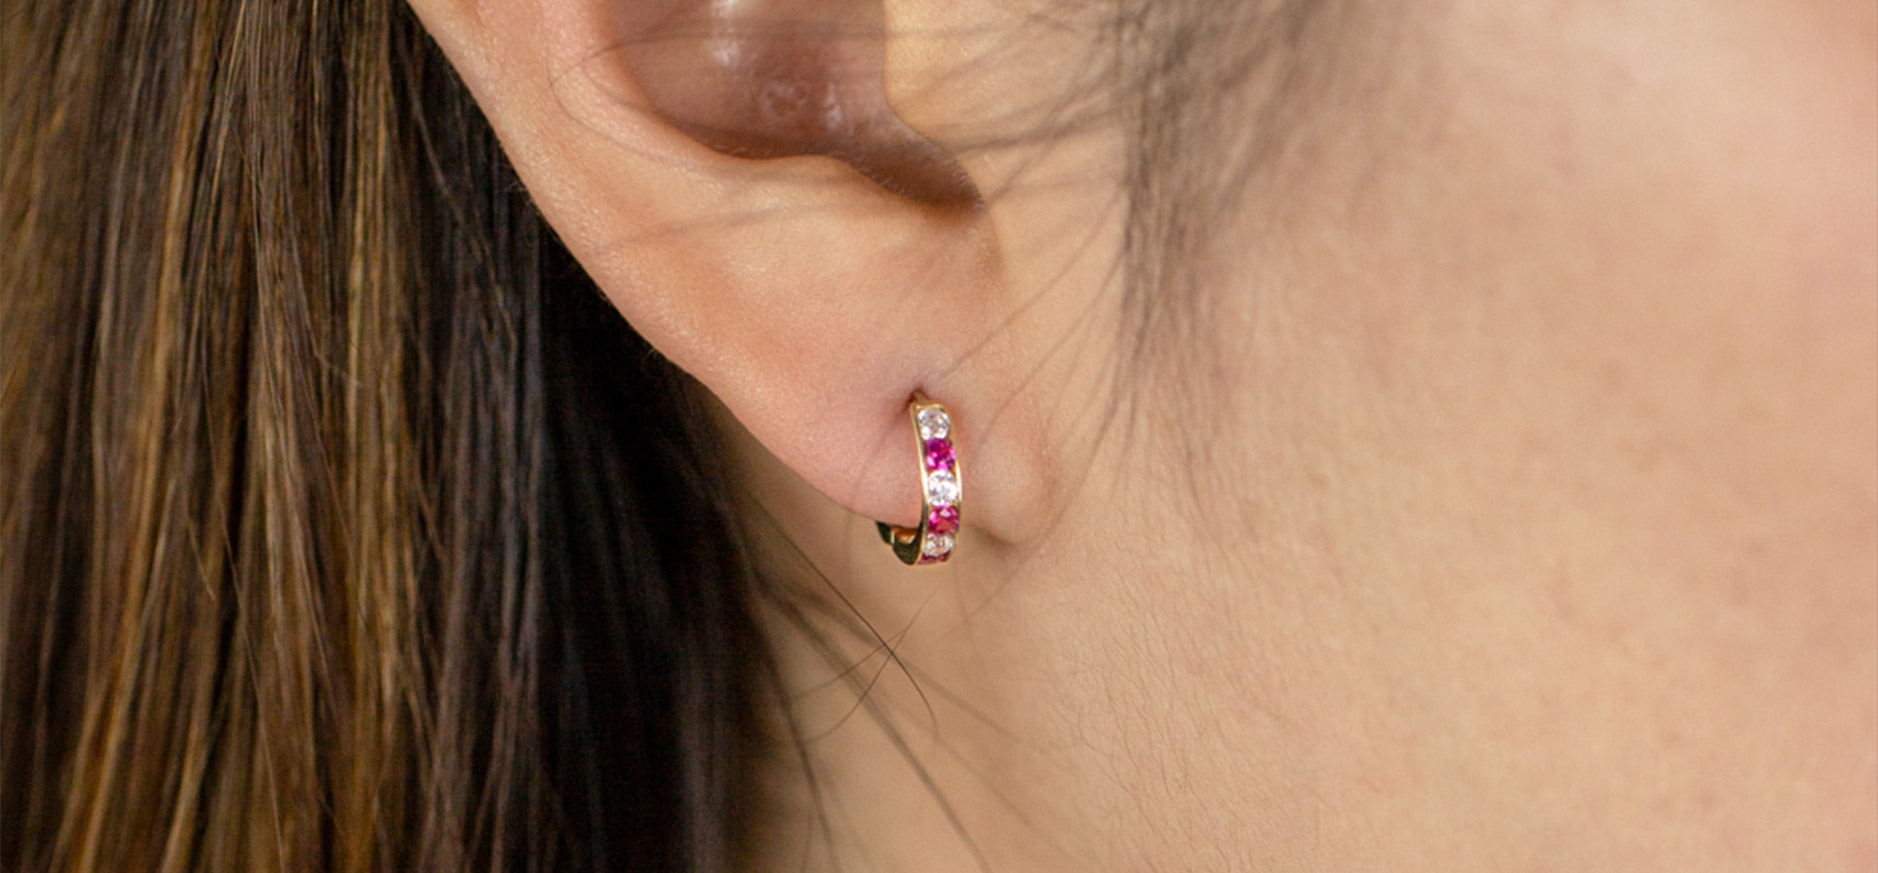 diamond earrings buying guide - huggie earrings